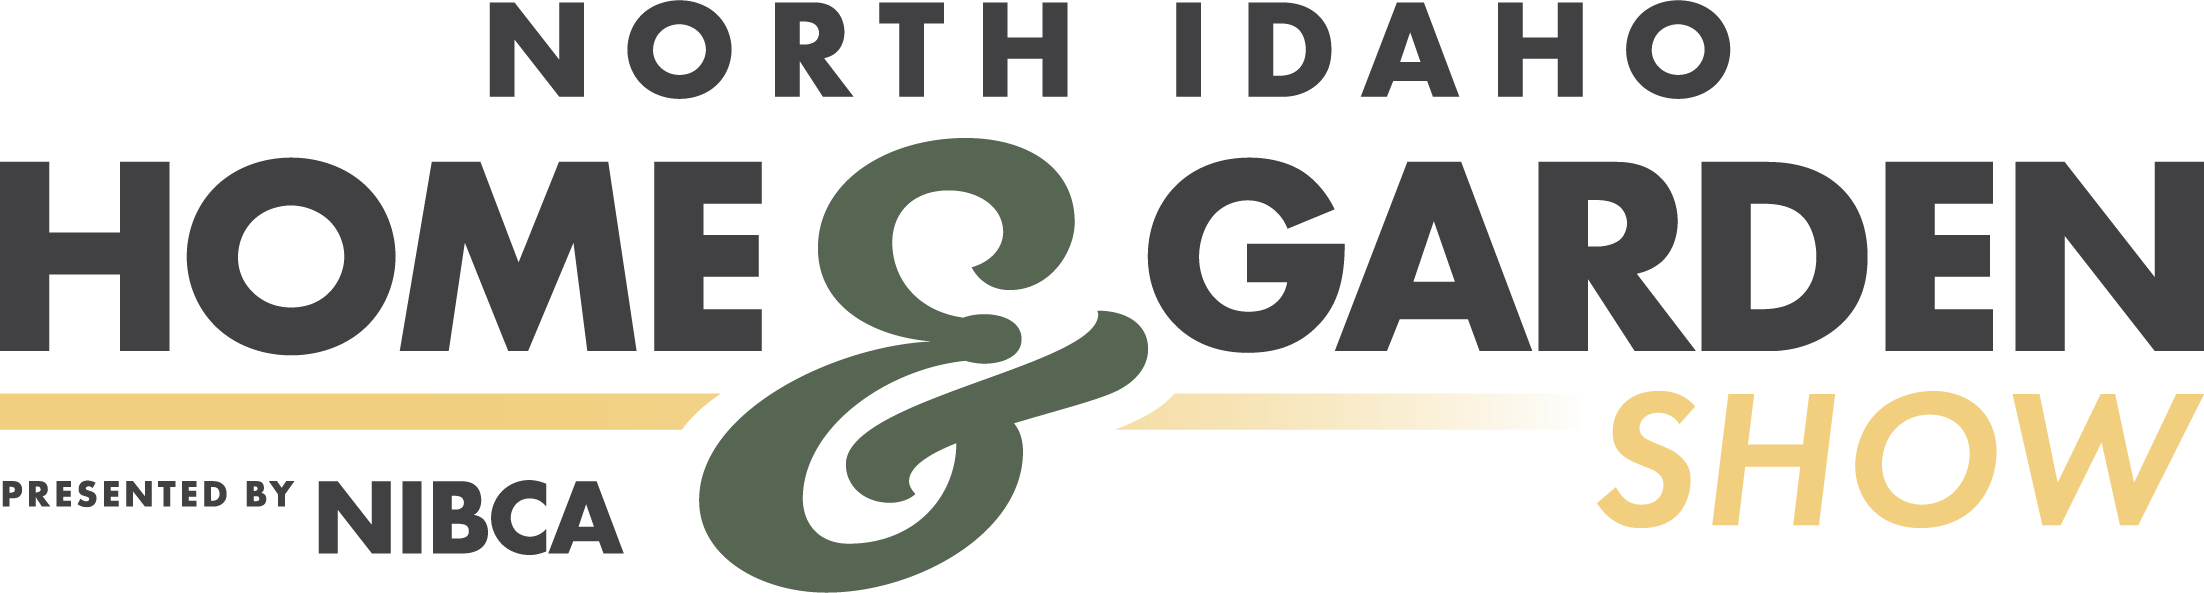 home and garden show logo